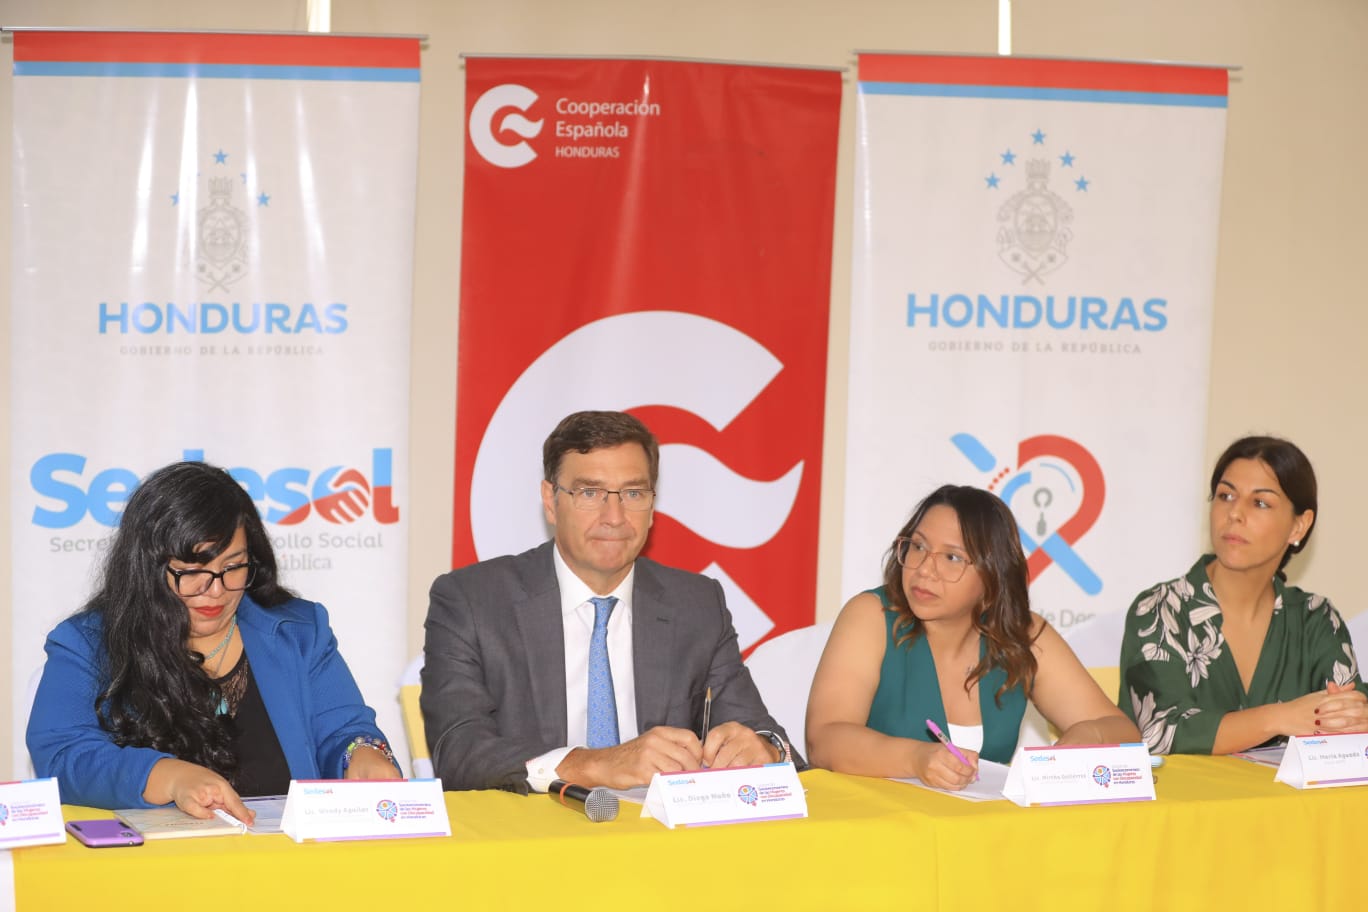 La SEDESOL y AECID contribuyen al desarrollo socioeconómico de mujeres con discapacidad en Honduras...